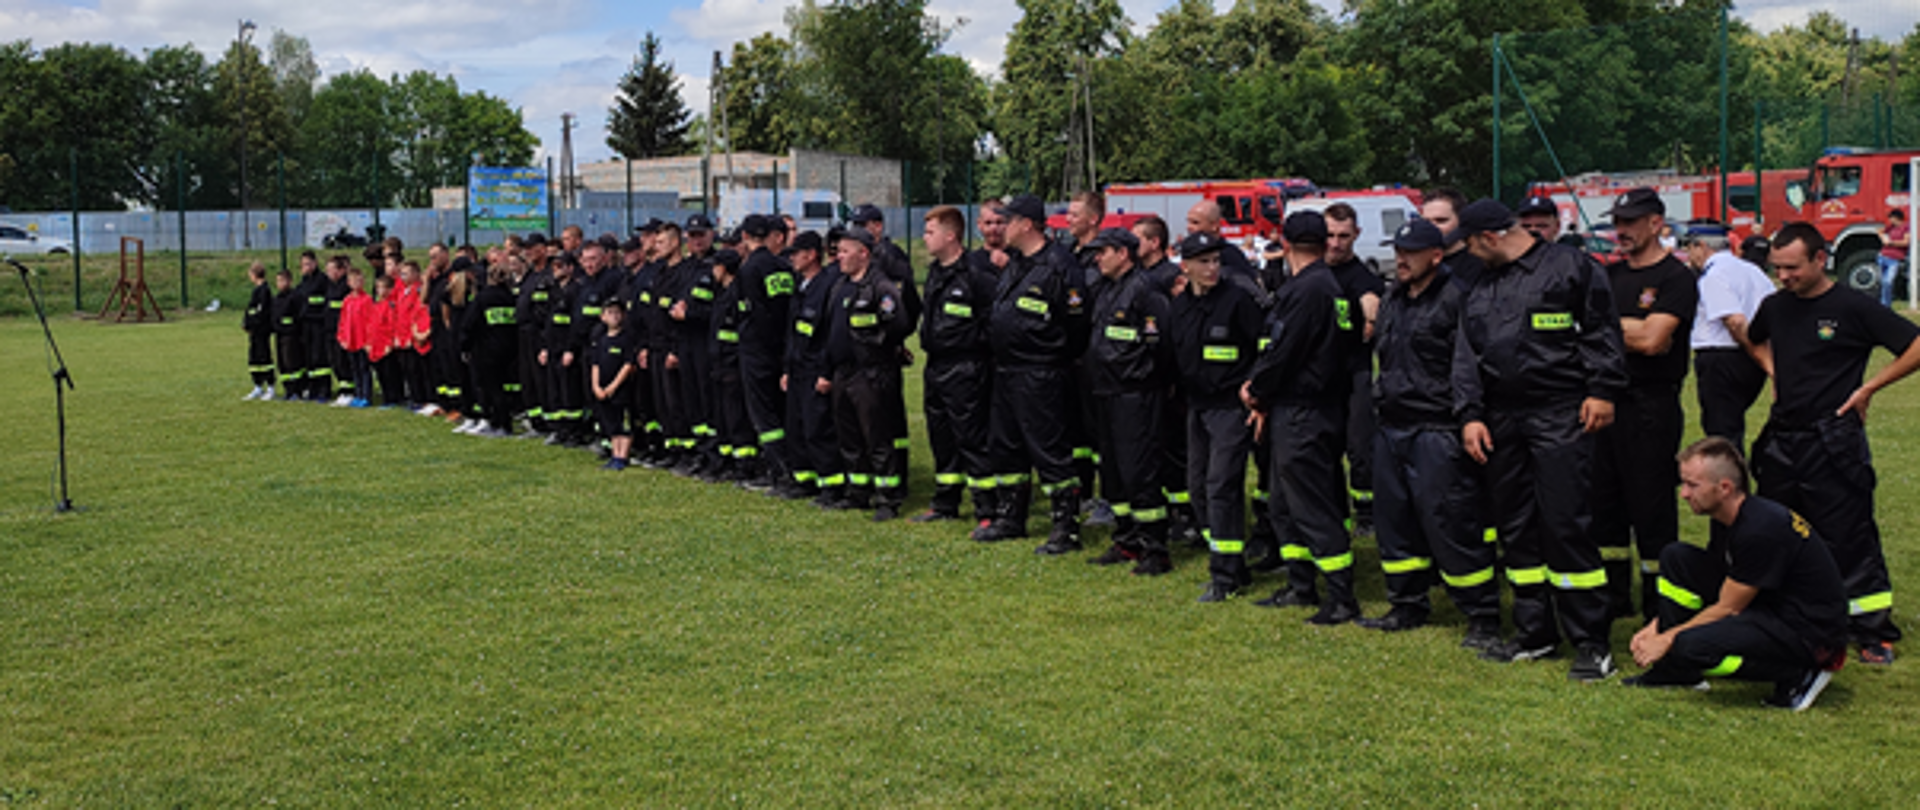 Zdjęcie przedstawia zbiórkę drużyn przed odczytaniem protokołu sędziego głównego zawodów sportowo- pożarniczych